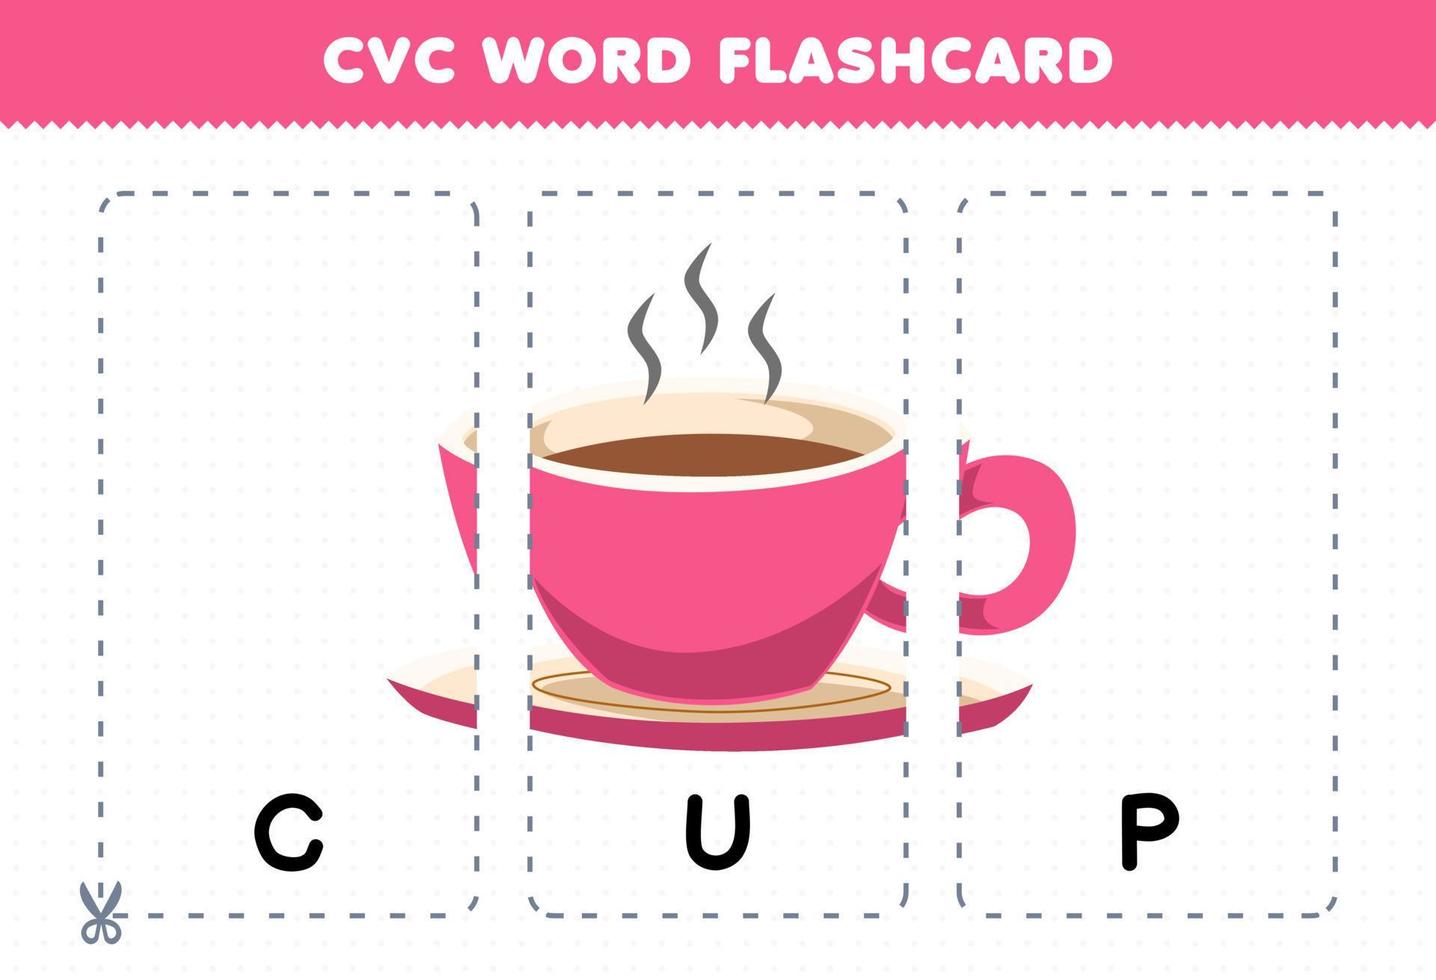 formazione scolastica gioco per bambini apprendimento consonante vocale consonante parola con carino cartone animato tazza illustrazione stampabile flashcard vettore